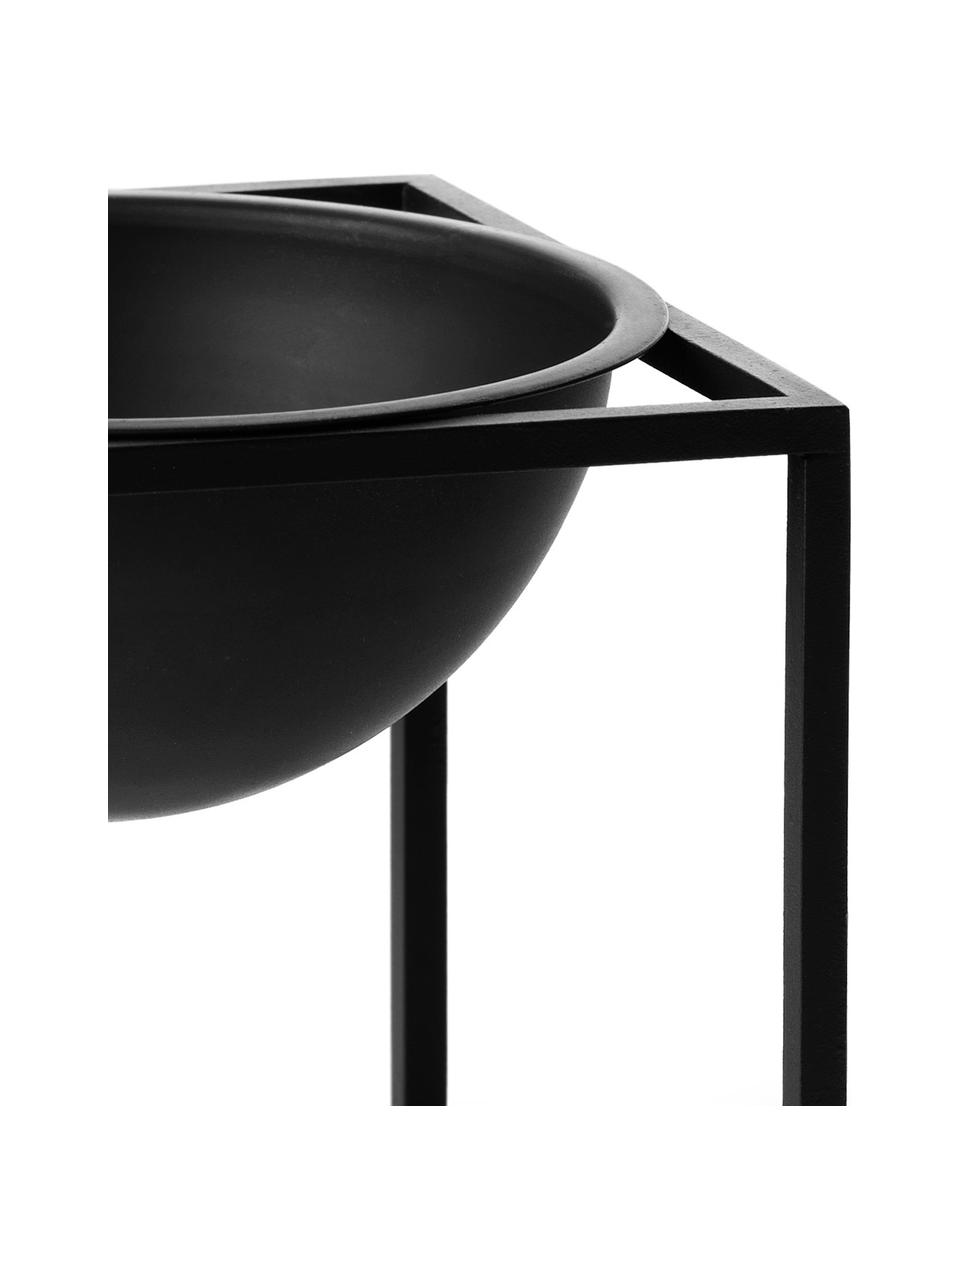 Design-Schale Kubus Ø 14 cm, stahl, lackiert, schwarz, B 14 x H 14 cm